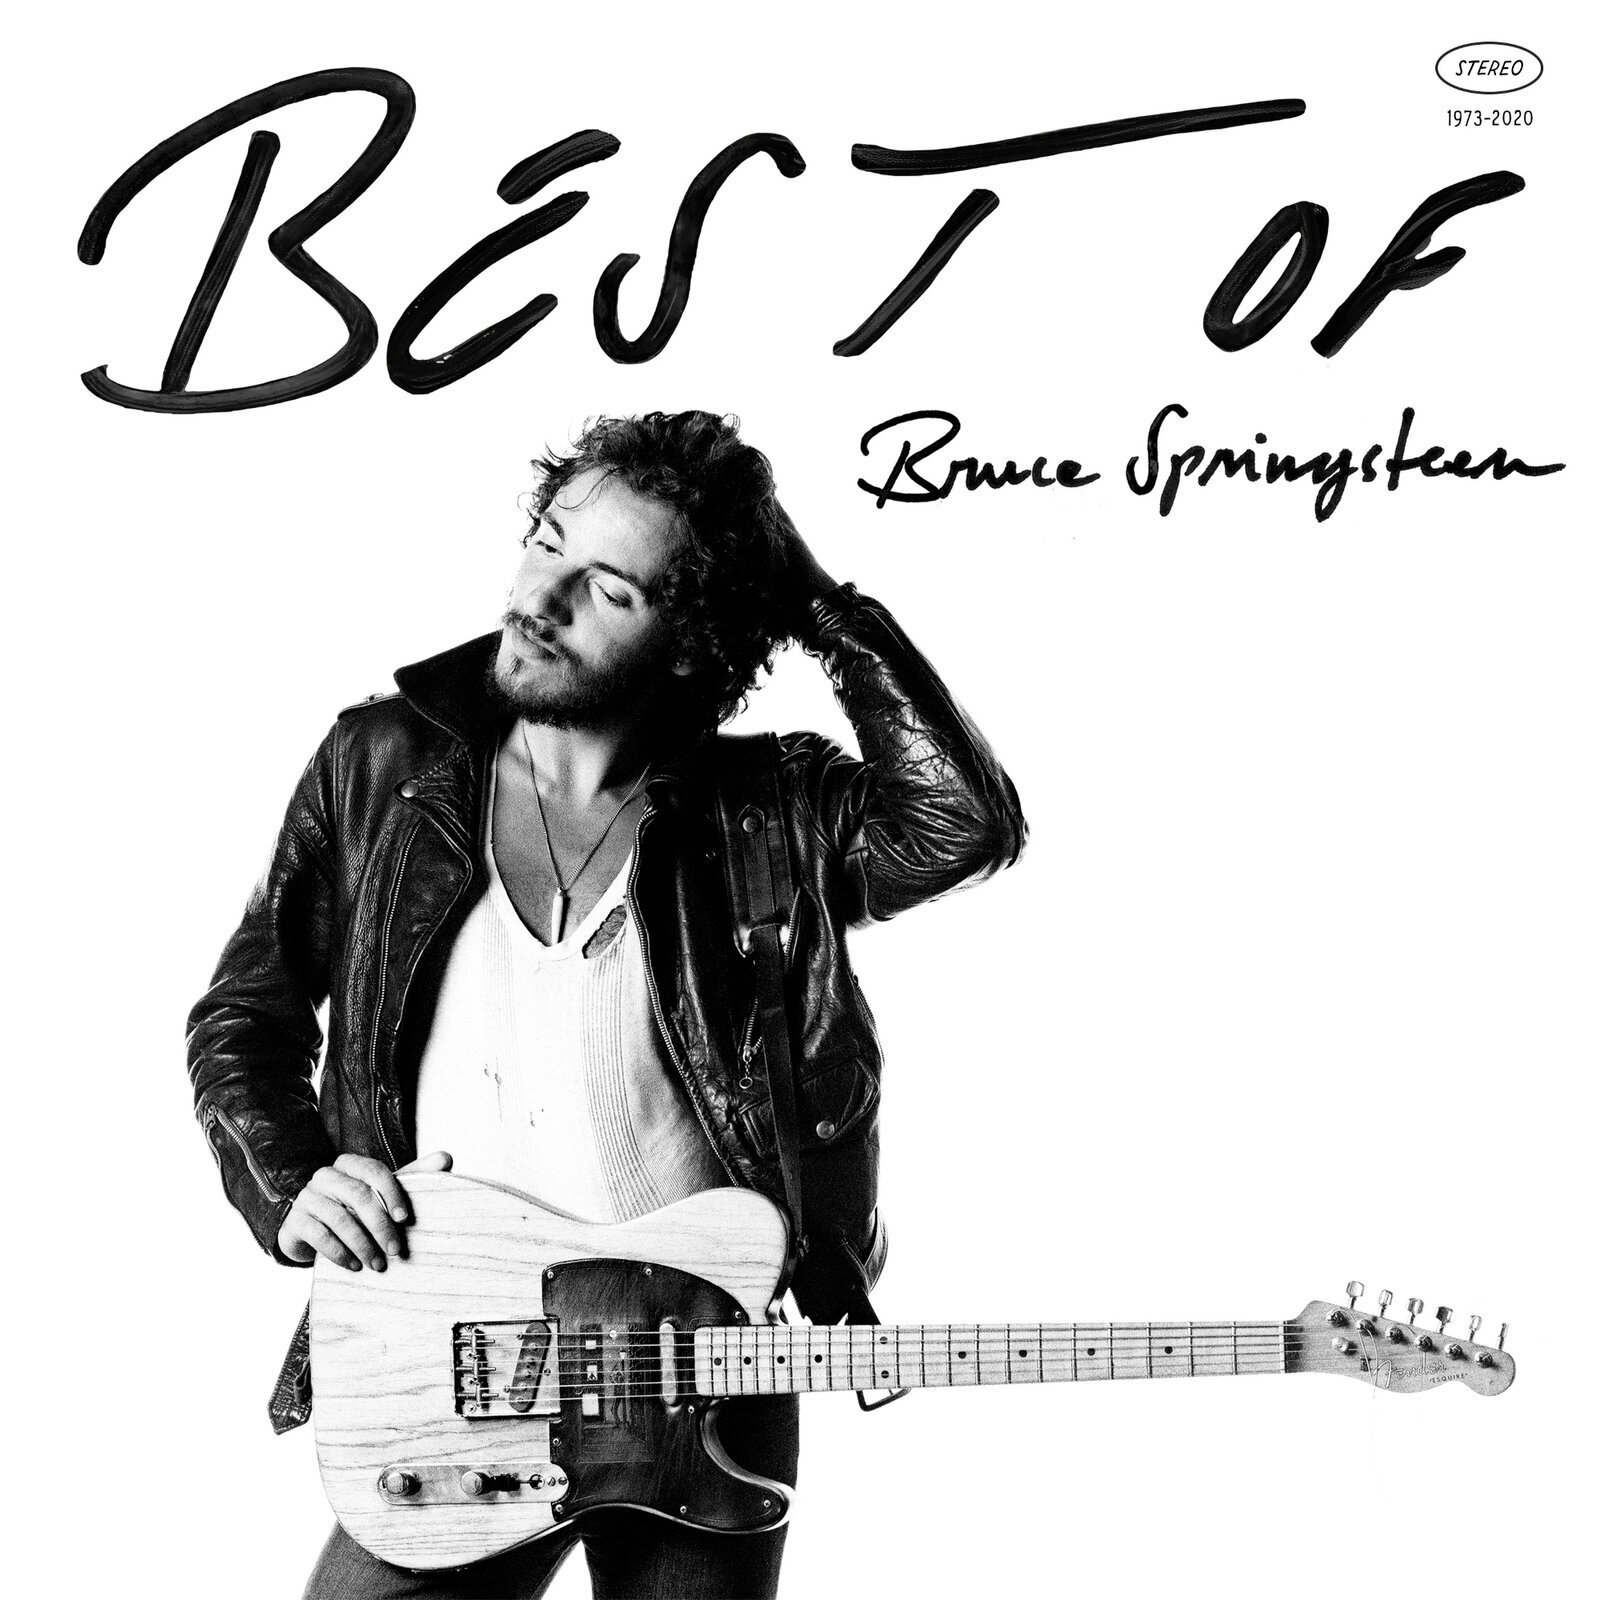 Glasbene CD Bruce Springsteen - Best Of Bruce Springsteen (CD)